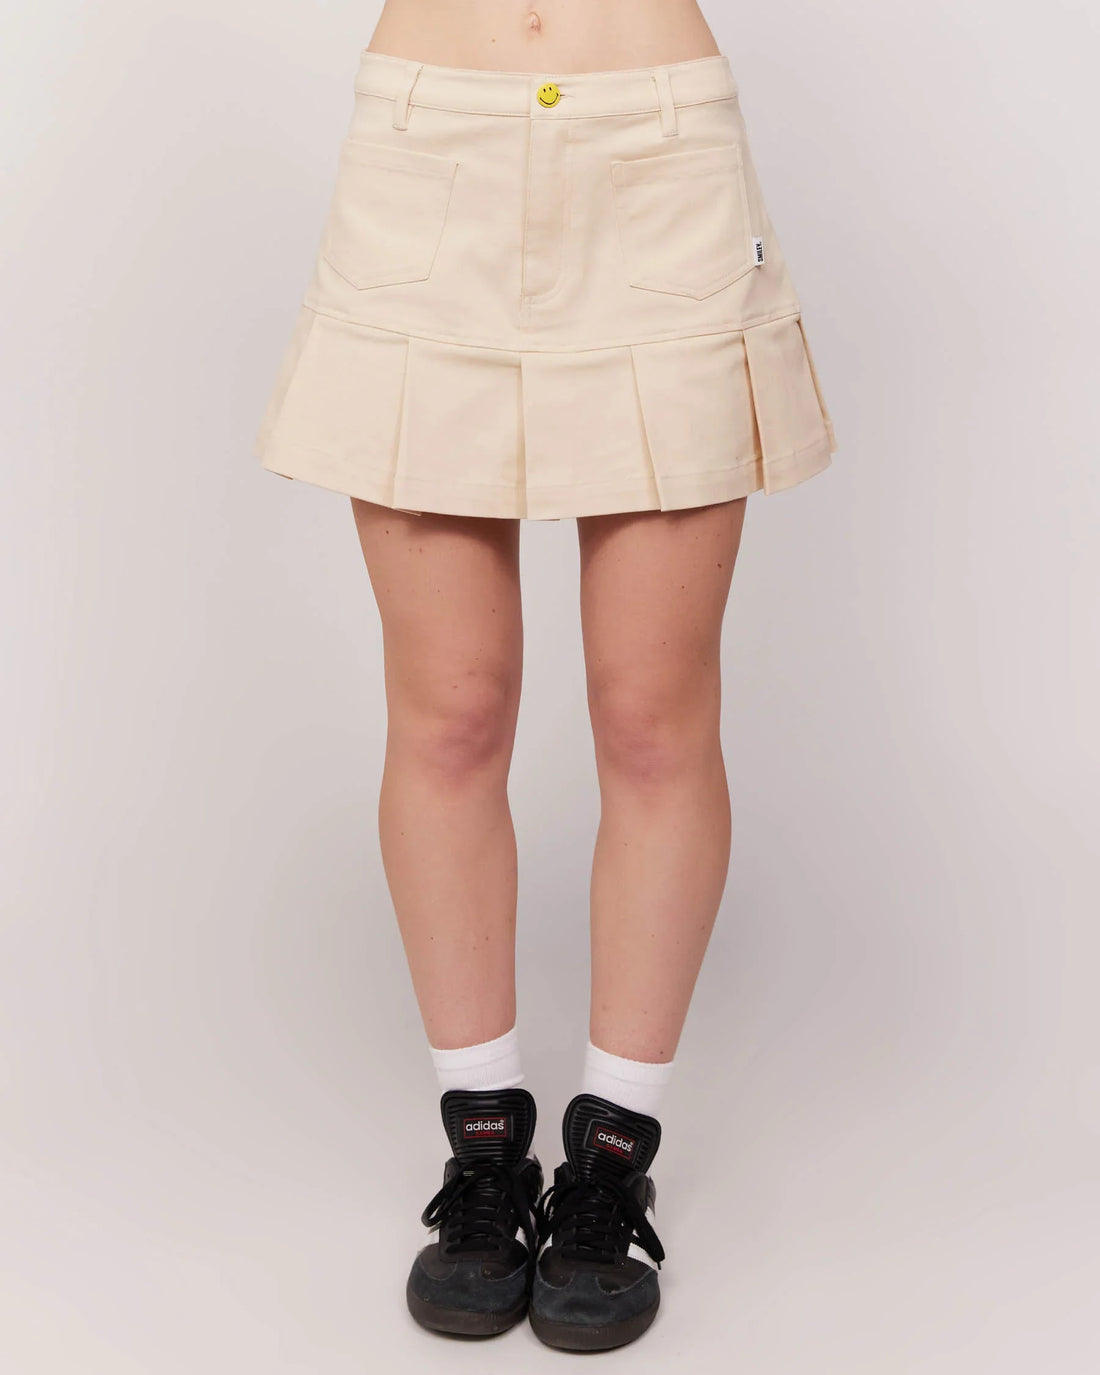 Shop Samii Ryan x SMILEY® Festival Mini Skirt - Premium Skirts from Samii Ryan Online now at Spoiled Brat 